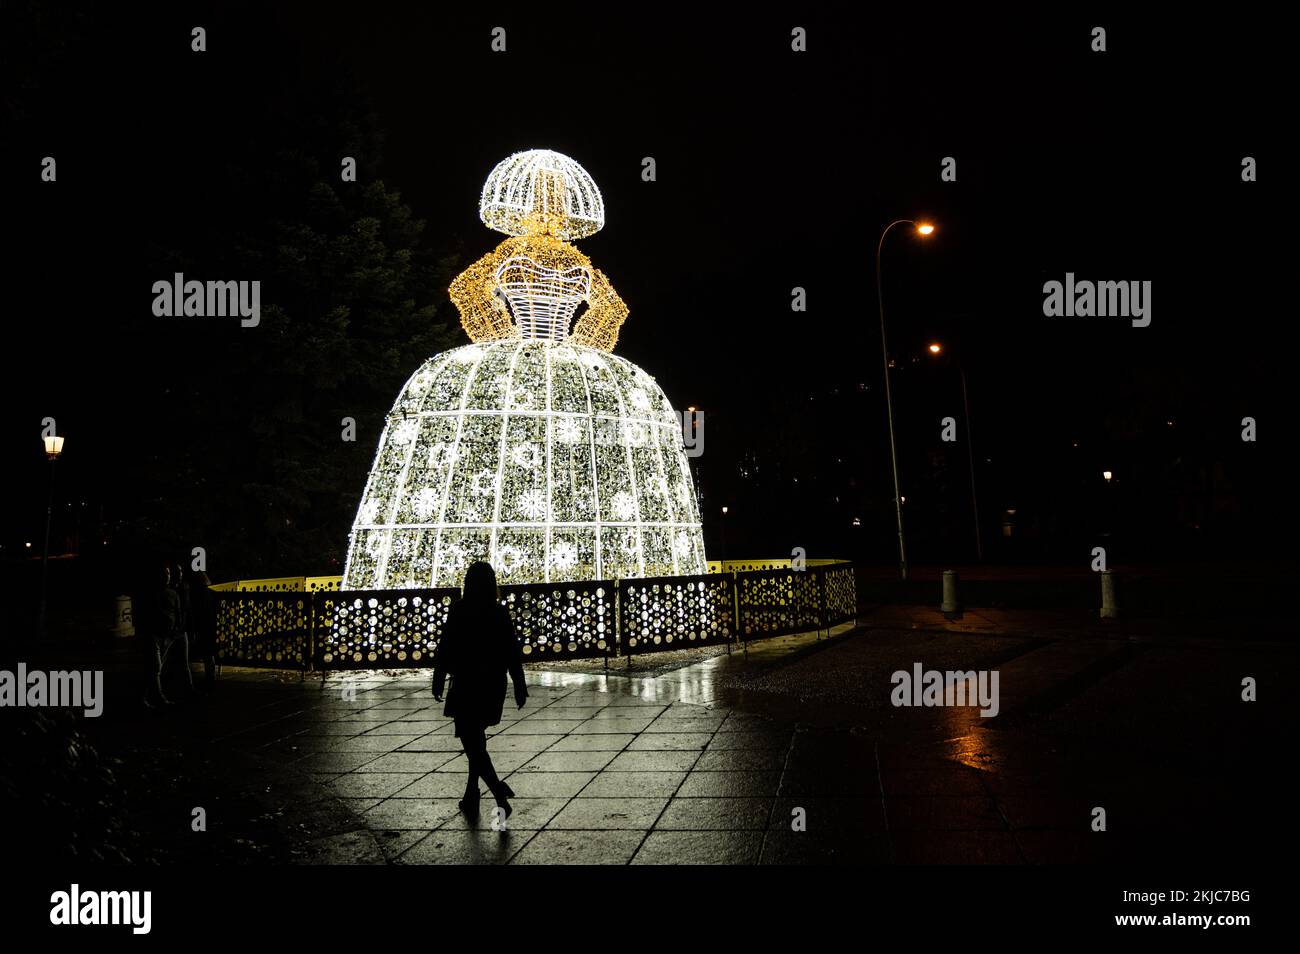 Madrid, Espagne. 24th novembre 2022. Une femme passant par une Menina illuminée pendant que les lumières de Noël sont allumées à Madrid. Credit: Marcos del Mazo/Alay Live News Banque D'Images